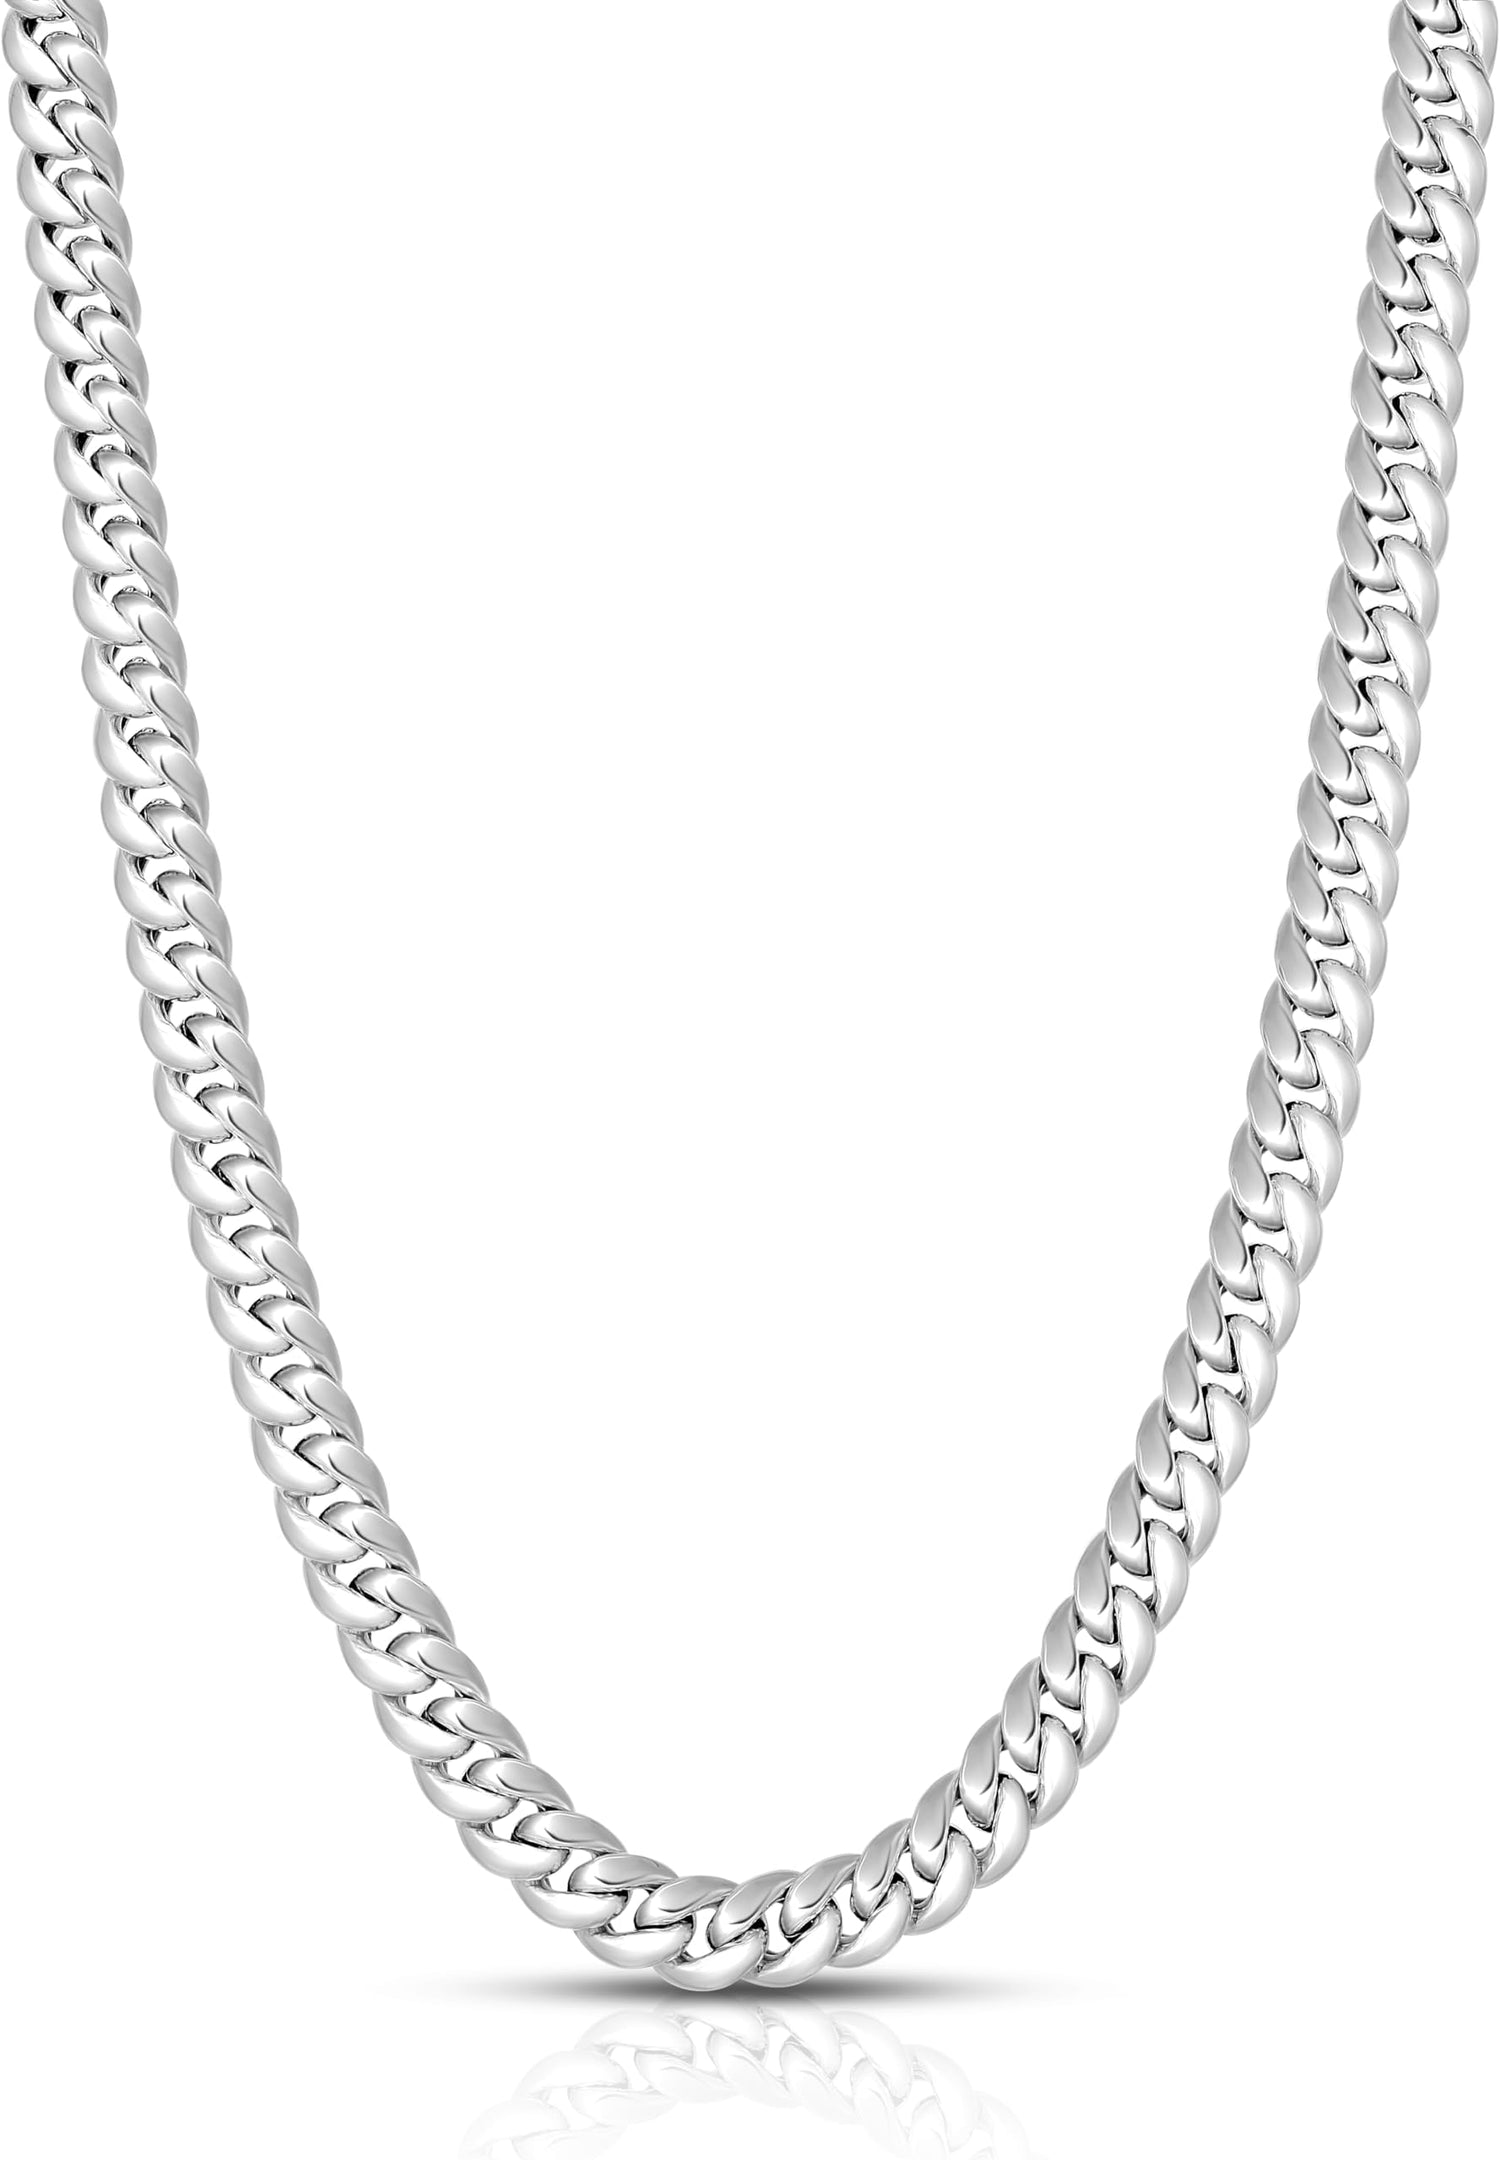 10k White Gold 6.8mm Semi-Lite Miami Cuban Chain Necklace